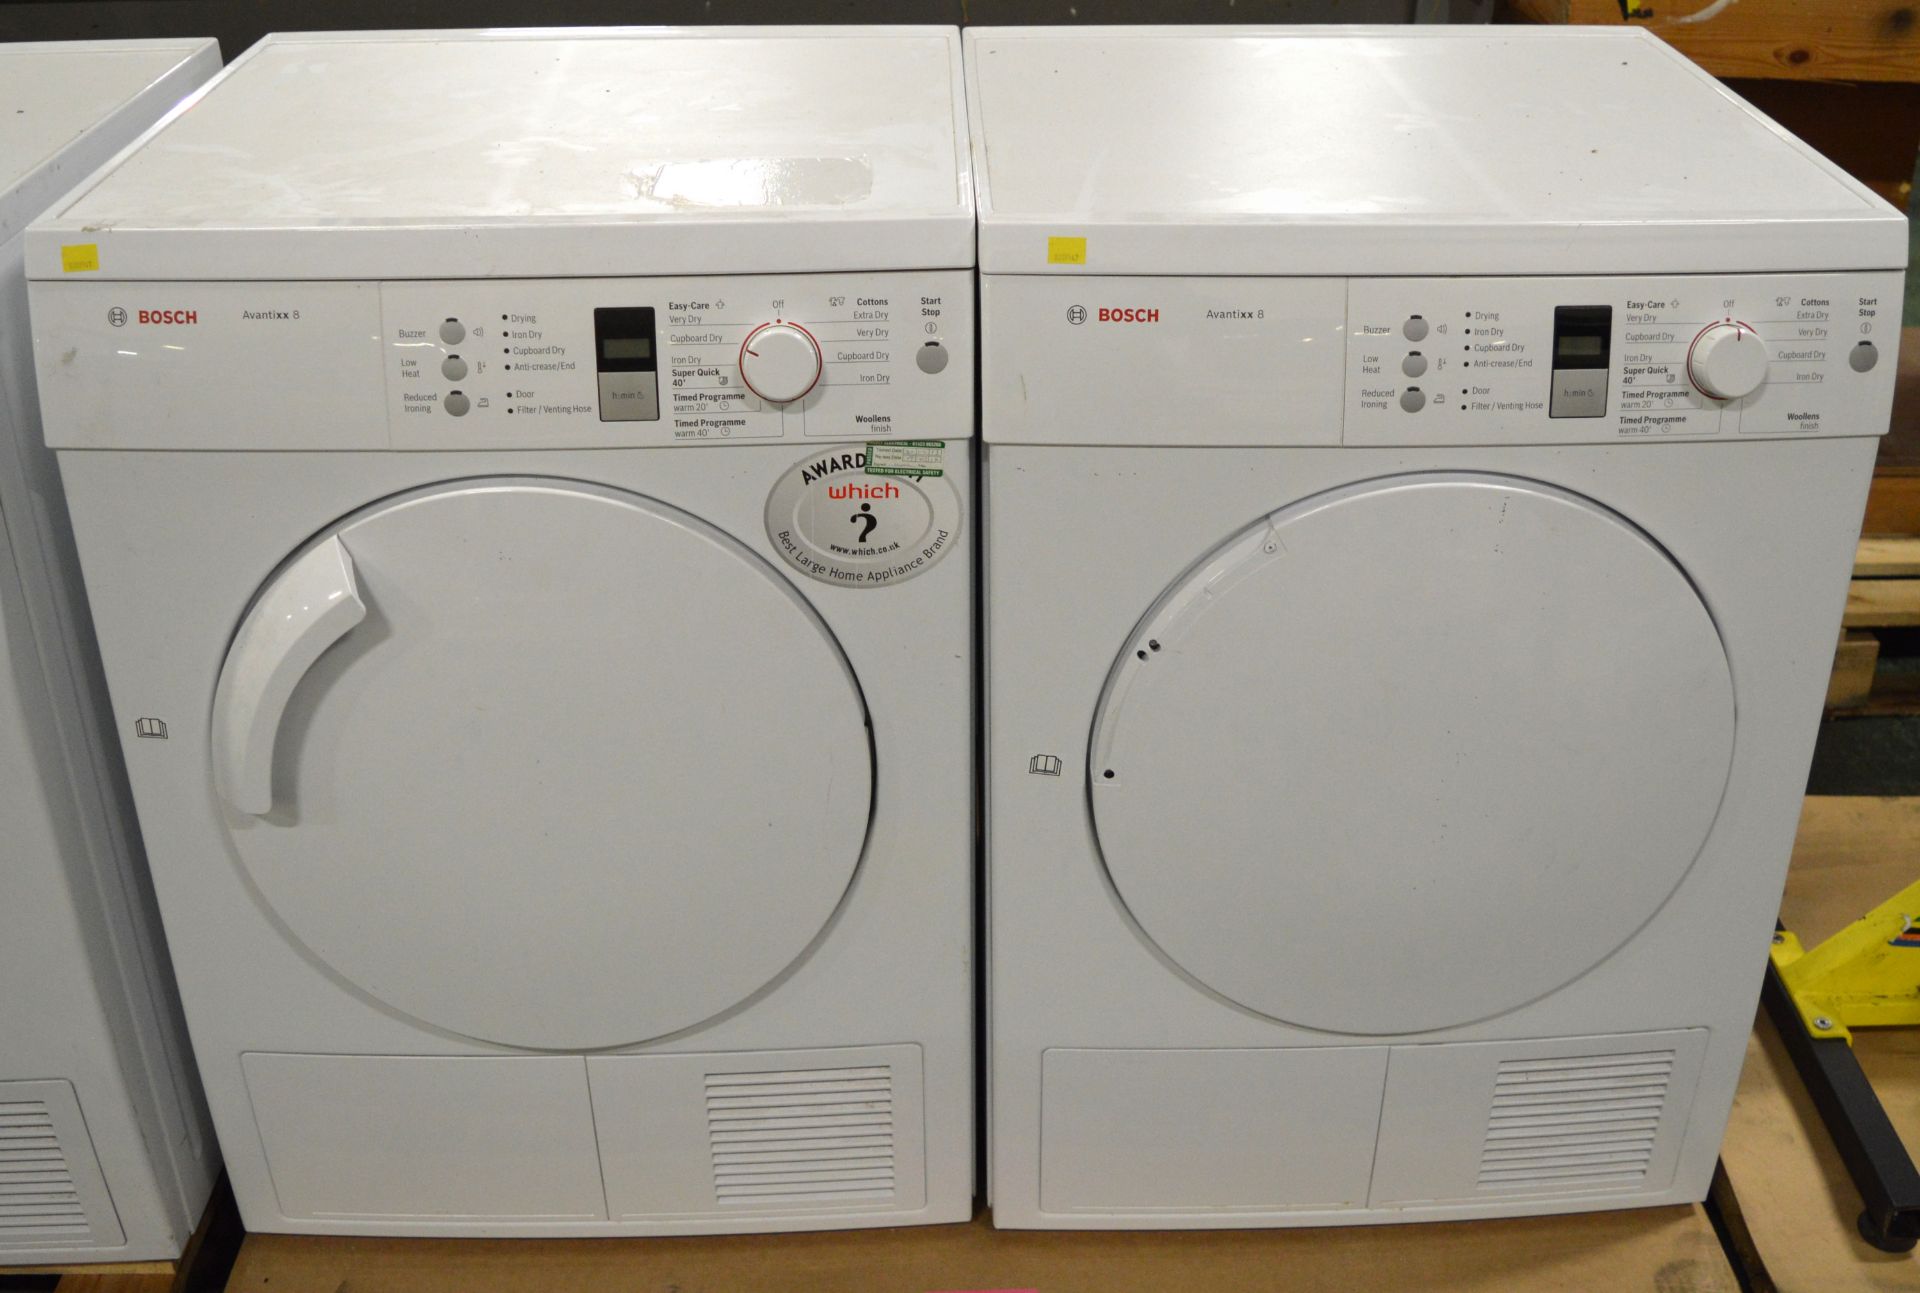 2x Bosch Avantixx 8 Clothes Dryers.